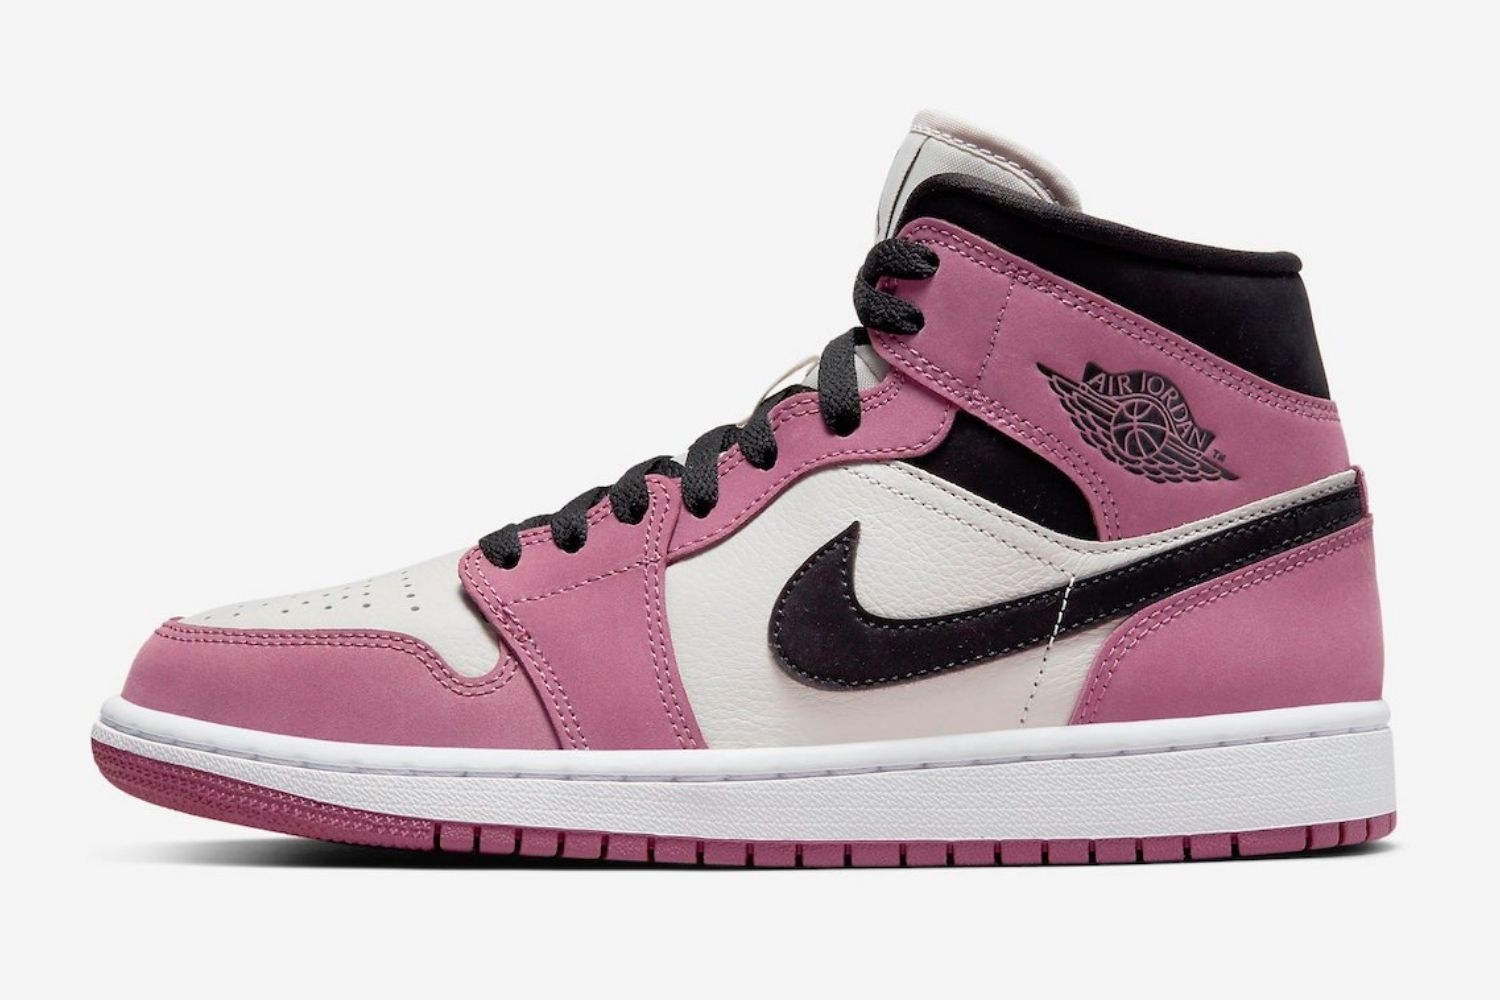 De Air Jordan 1 Mid krijgt een &#8216;Berry Pink&#8217; colorway